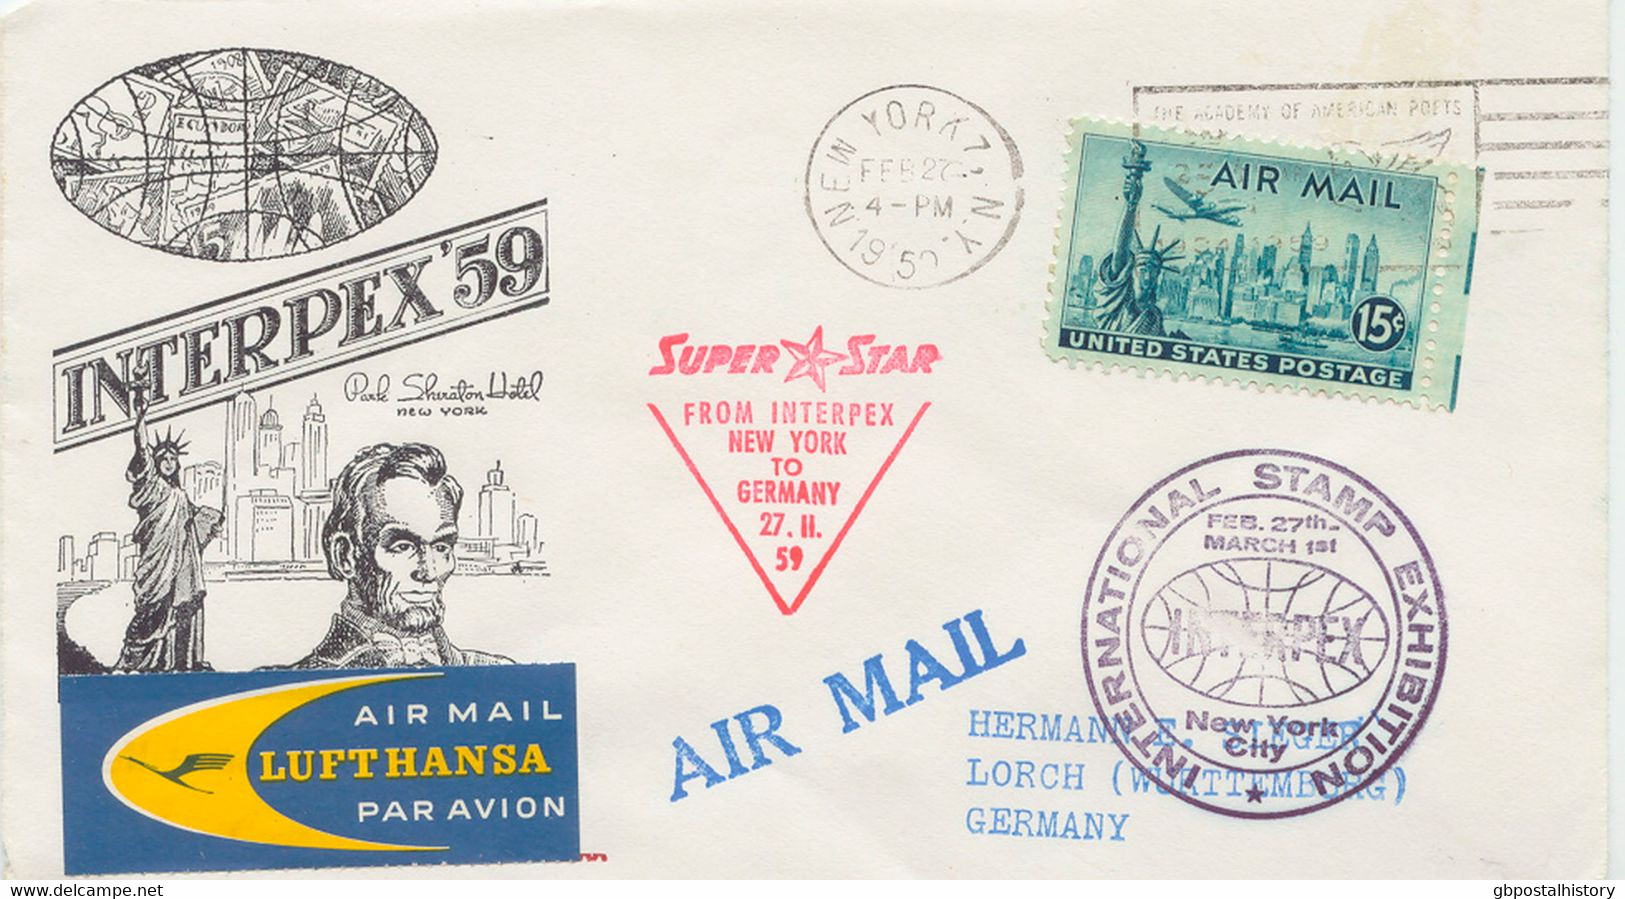 USA 1955/9 4 versch. seltene gesuchte Erst- und 1 Sonderflug der Dt. Lufthansa: New York - Hamburg, New York - Frankfurt